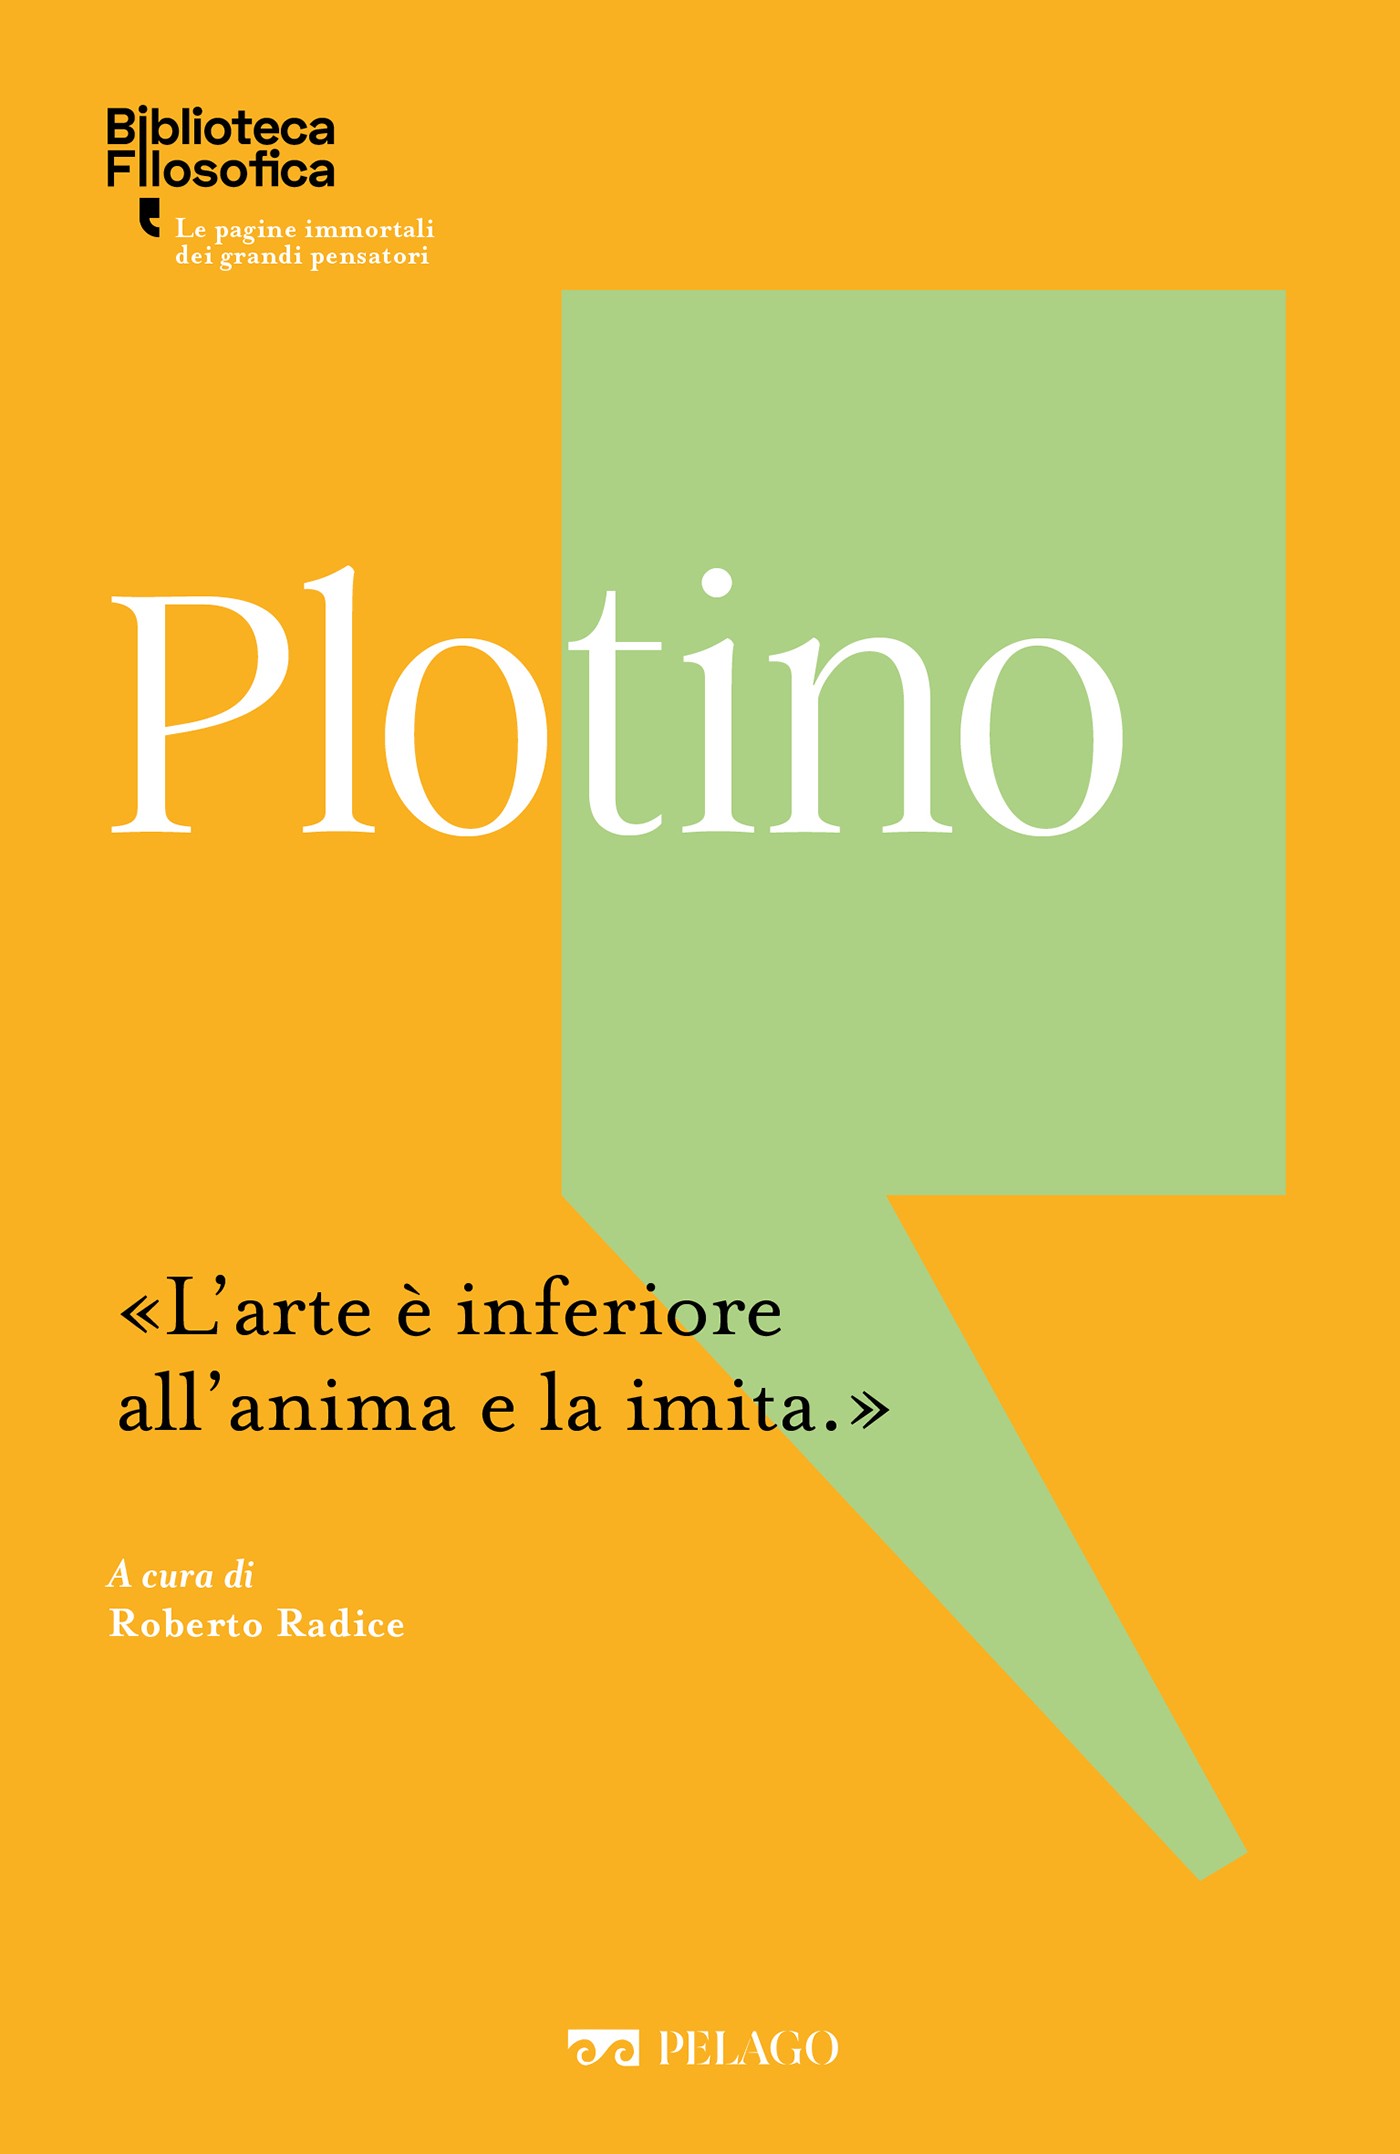 Plotino - Librerie.coop